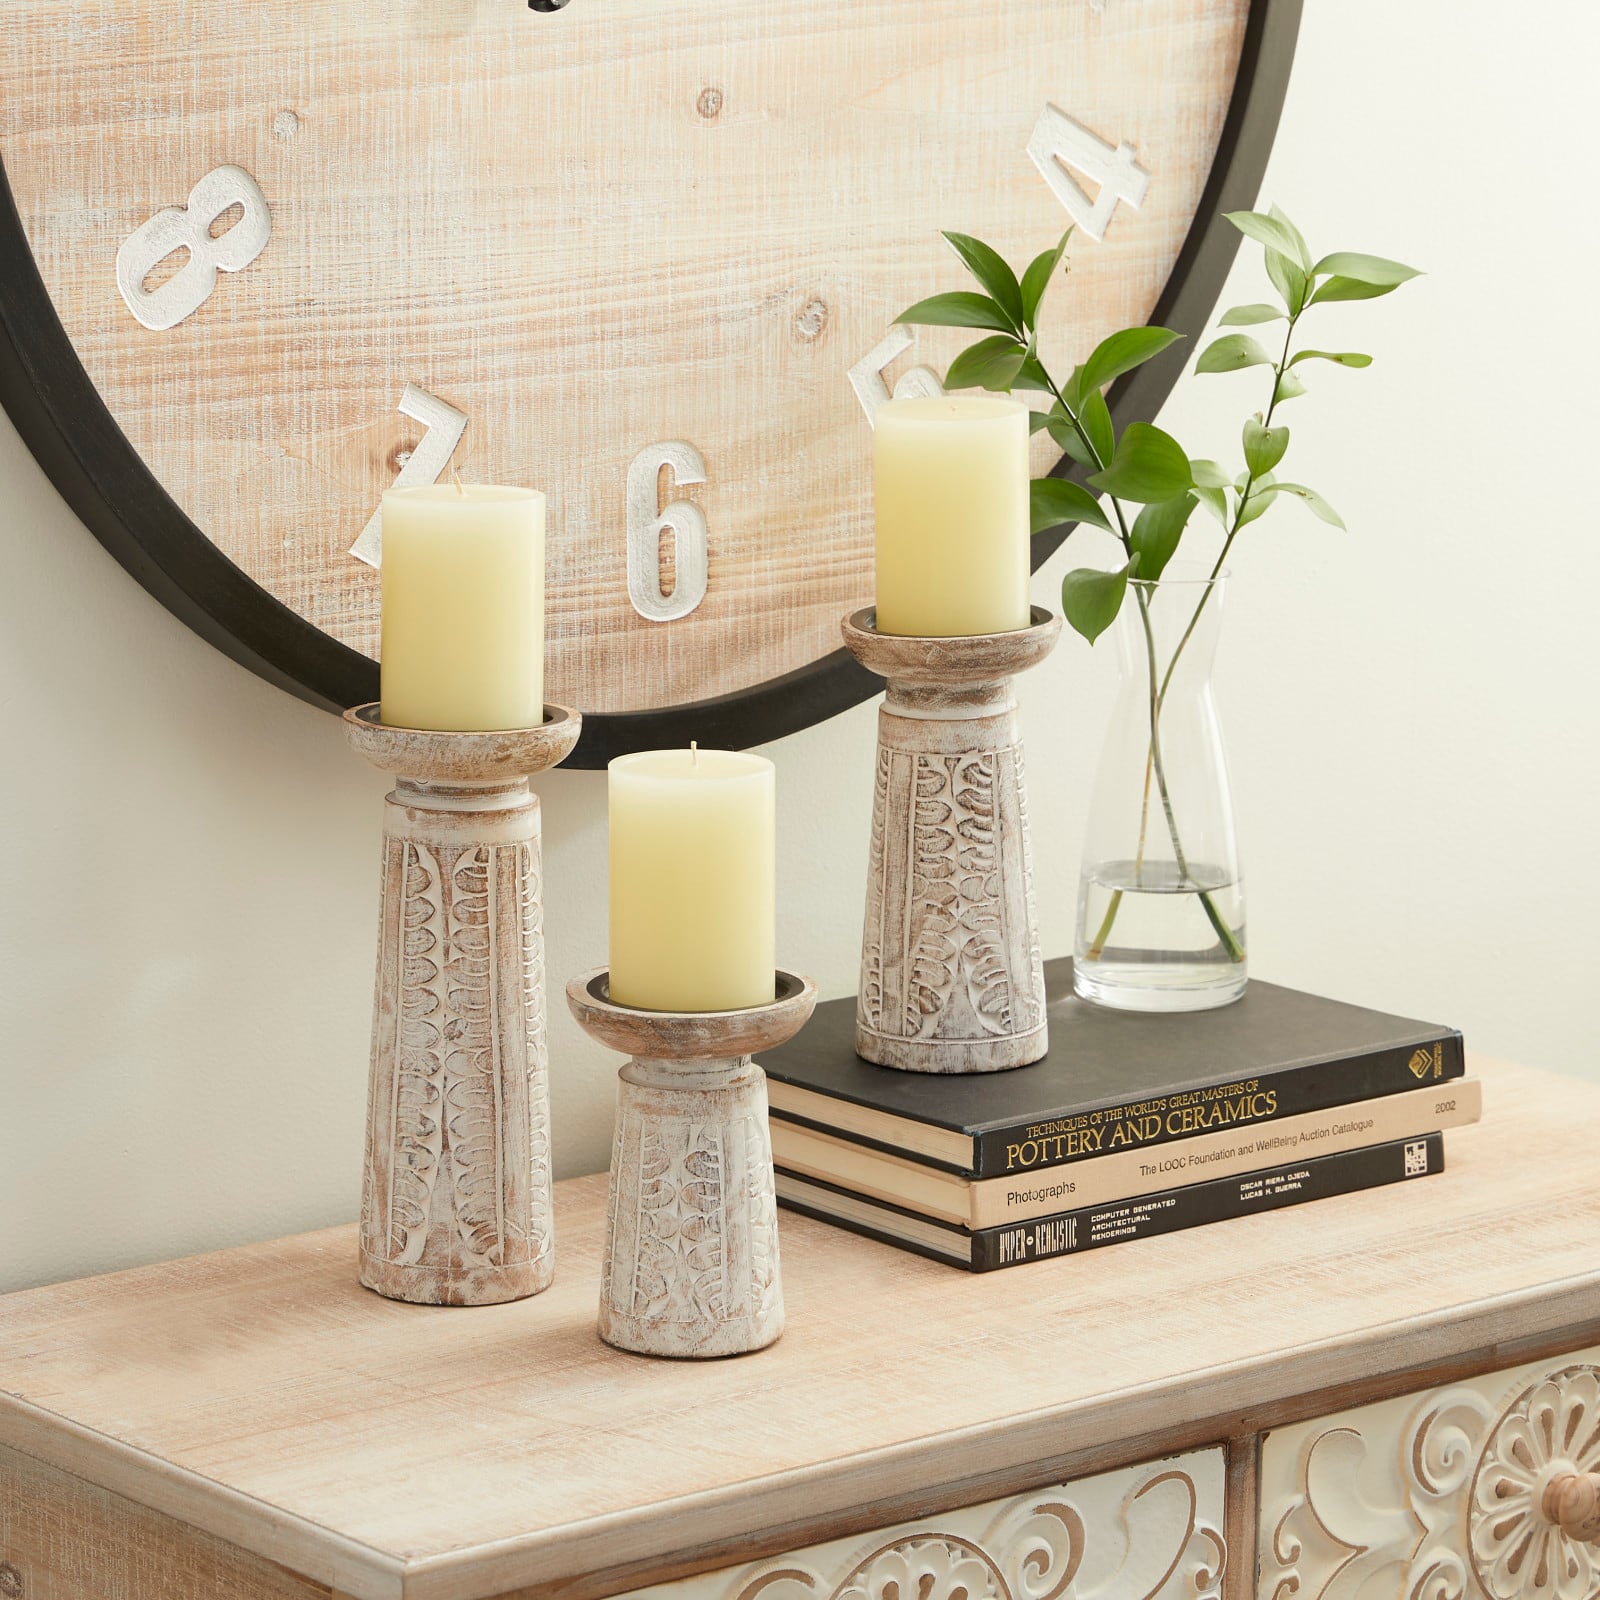 White Mango Wood Natural Candle Holder Set